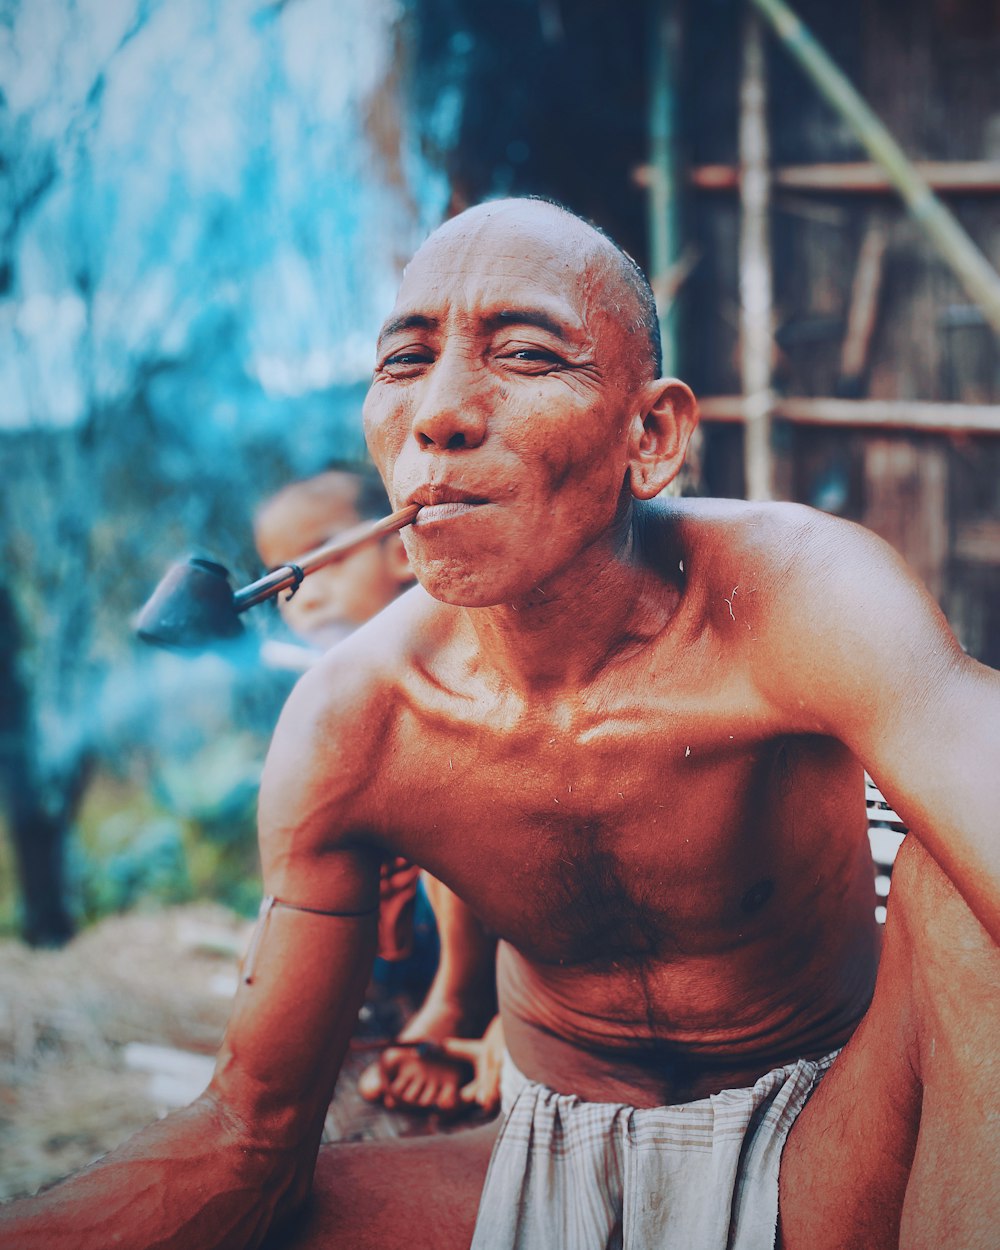 topless man smoking cigarette during daytime